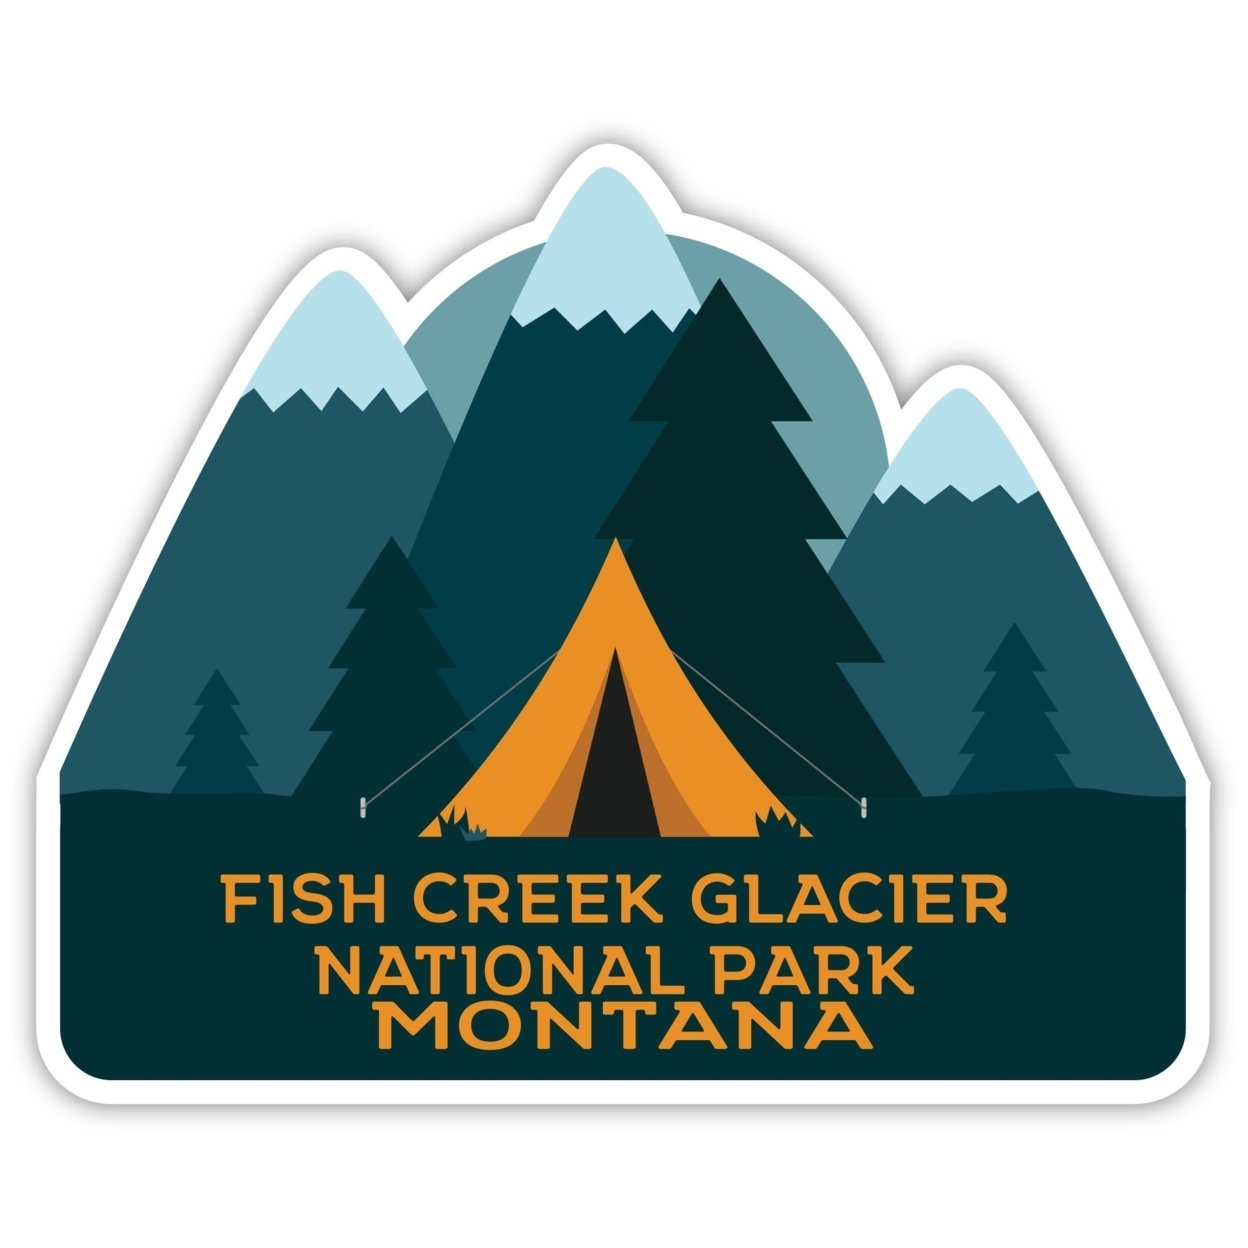 Fish Creek Glacier National Park Montana Souvenir Decorative Stickers (Choose Theme And Size) - Single Unit, 12-Inch, Tent